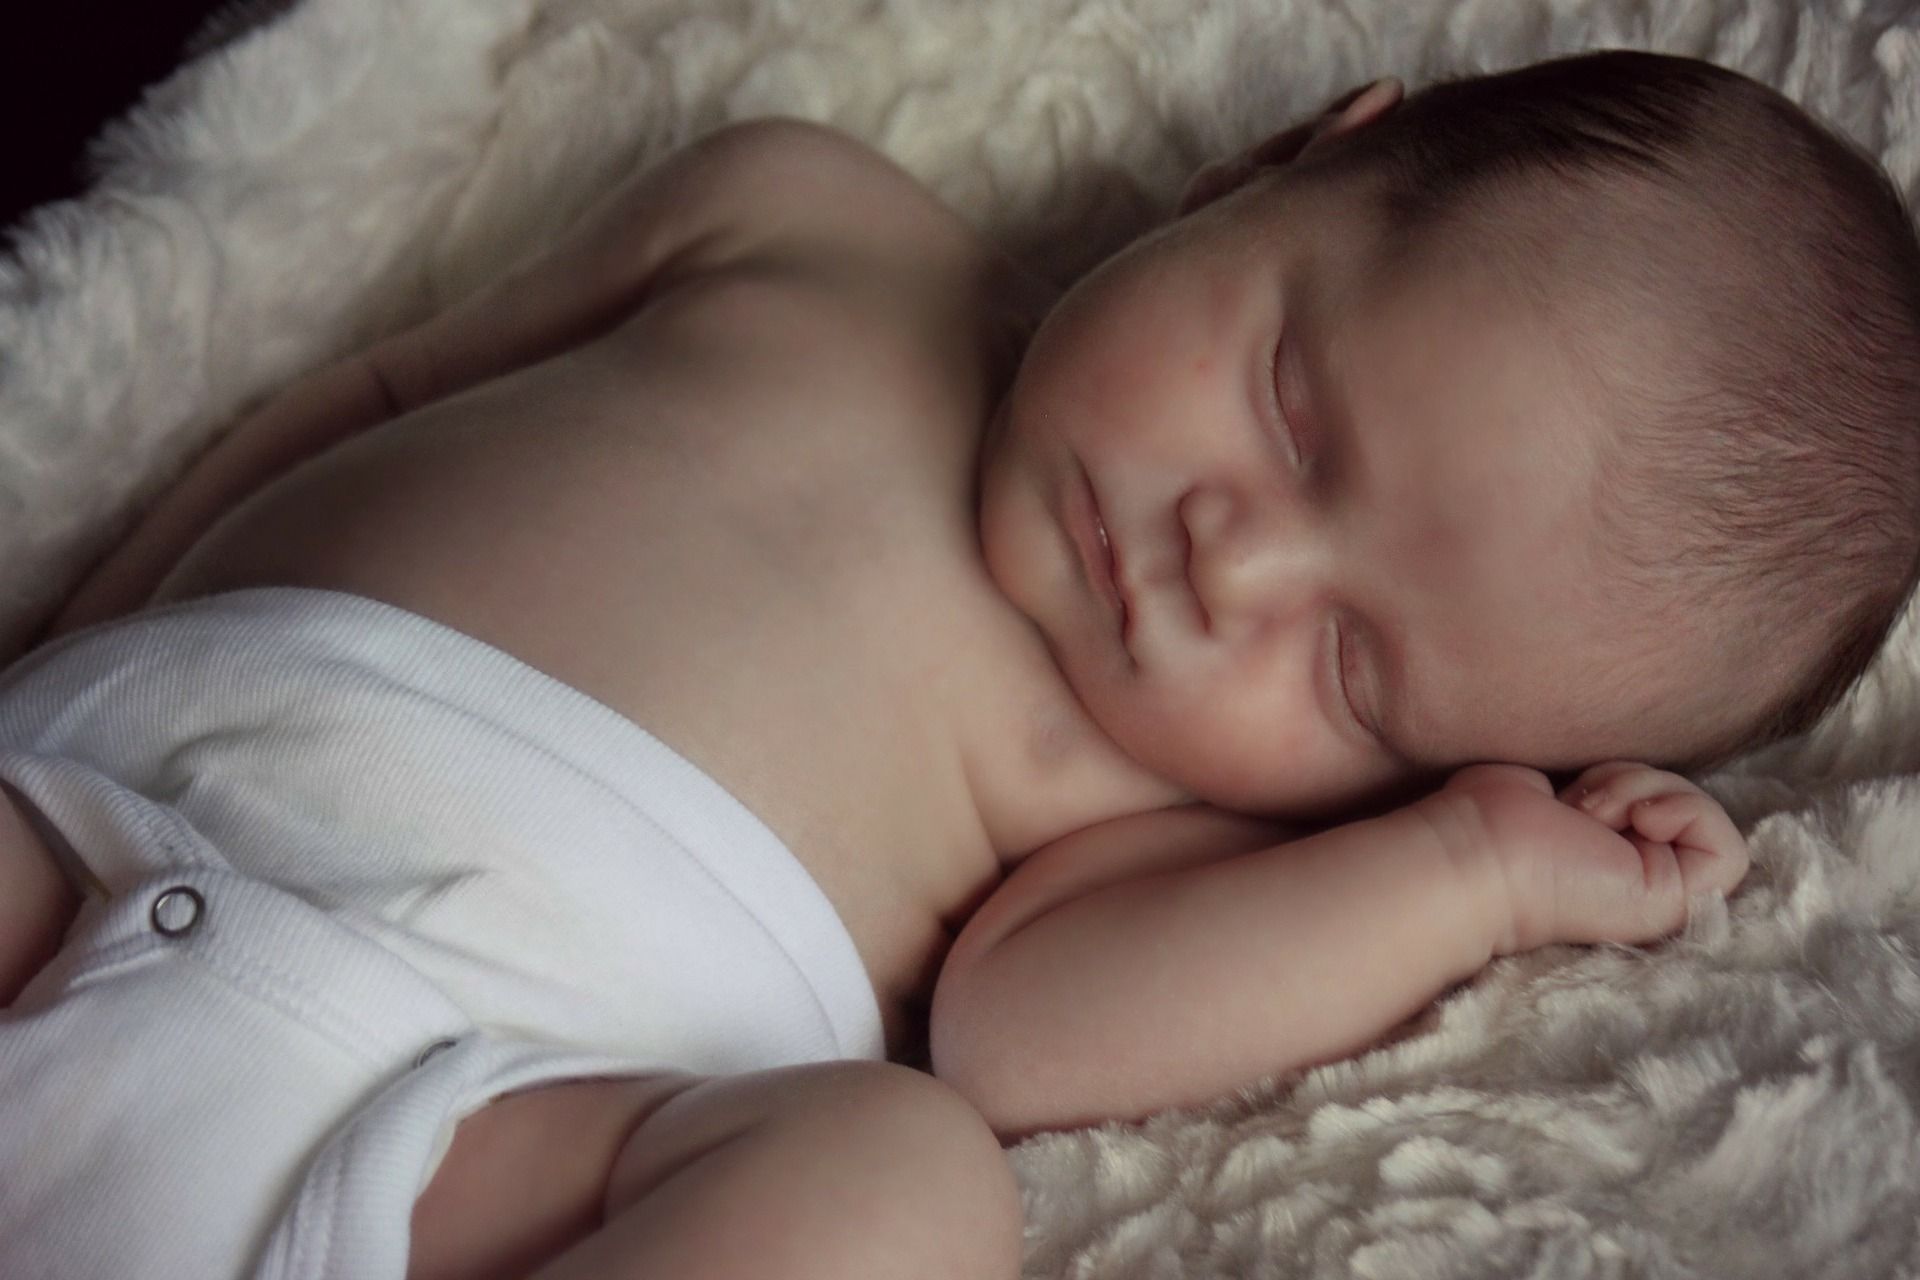 Il sonno dei fanciulli, neonati compresi, è condizionato dalla flora batterica